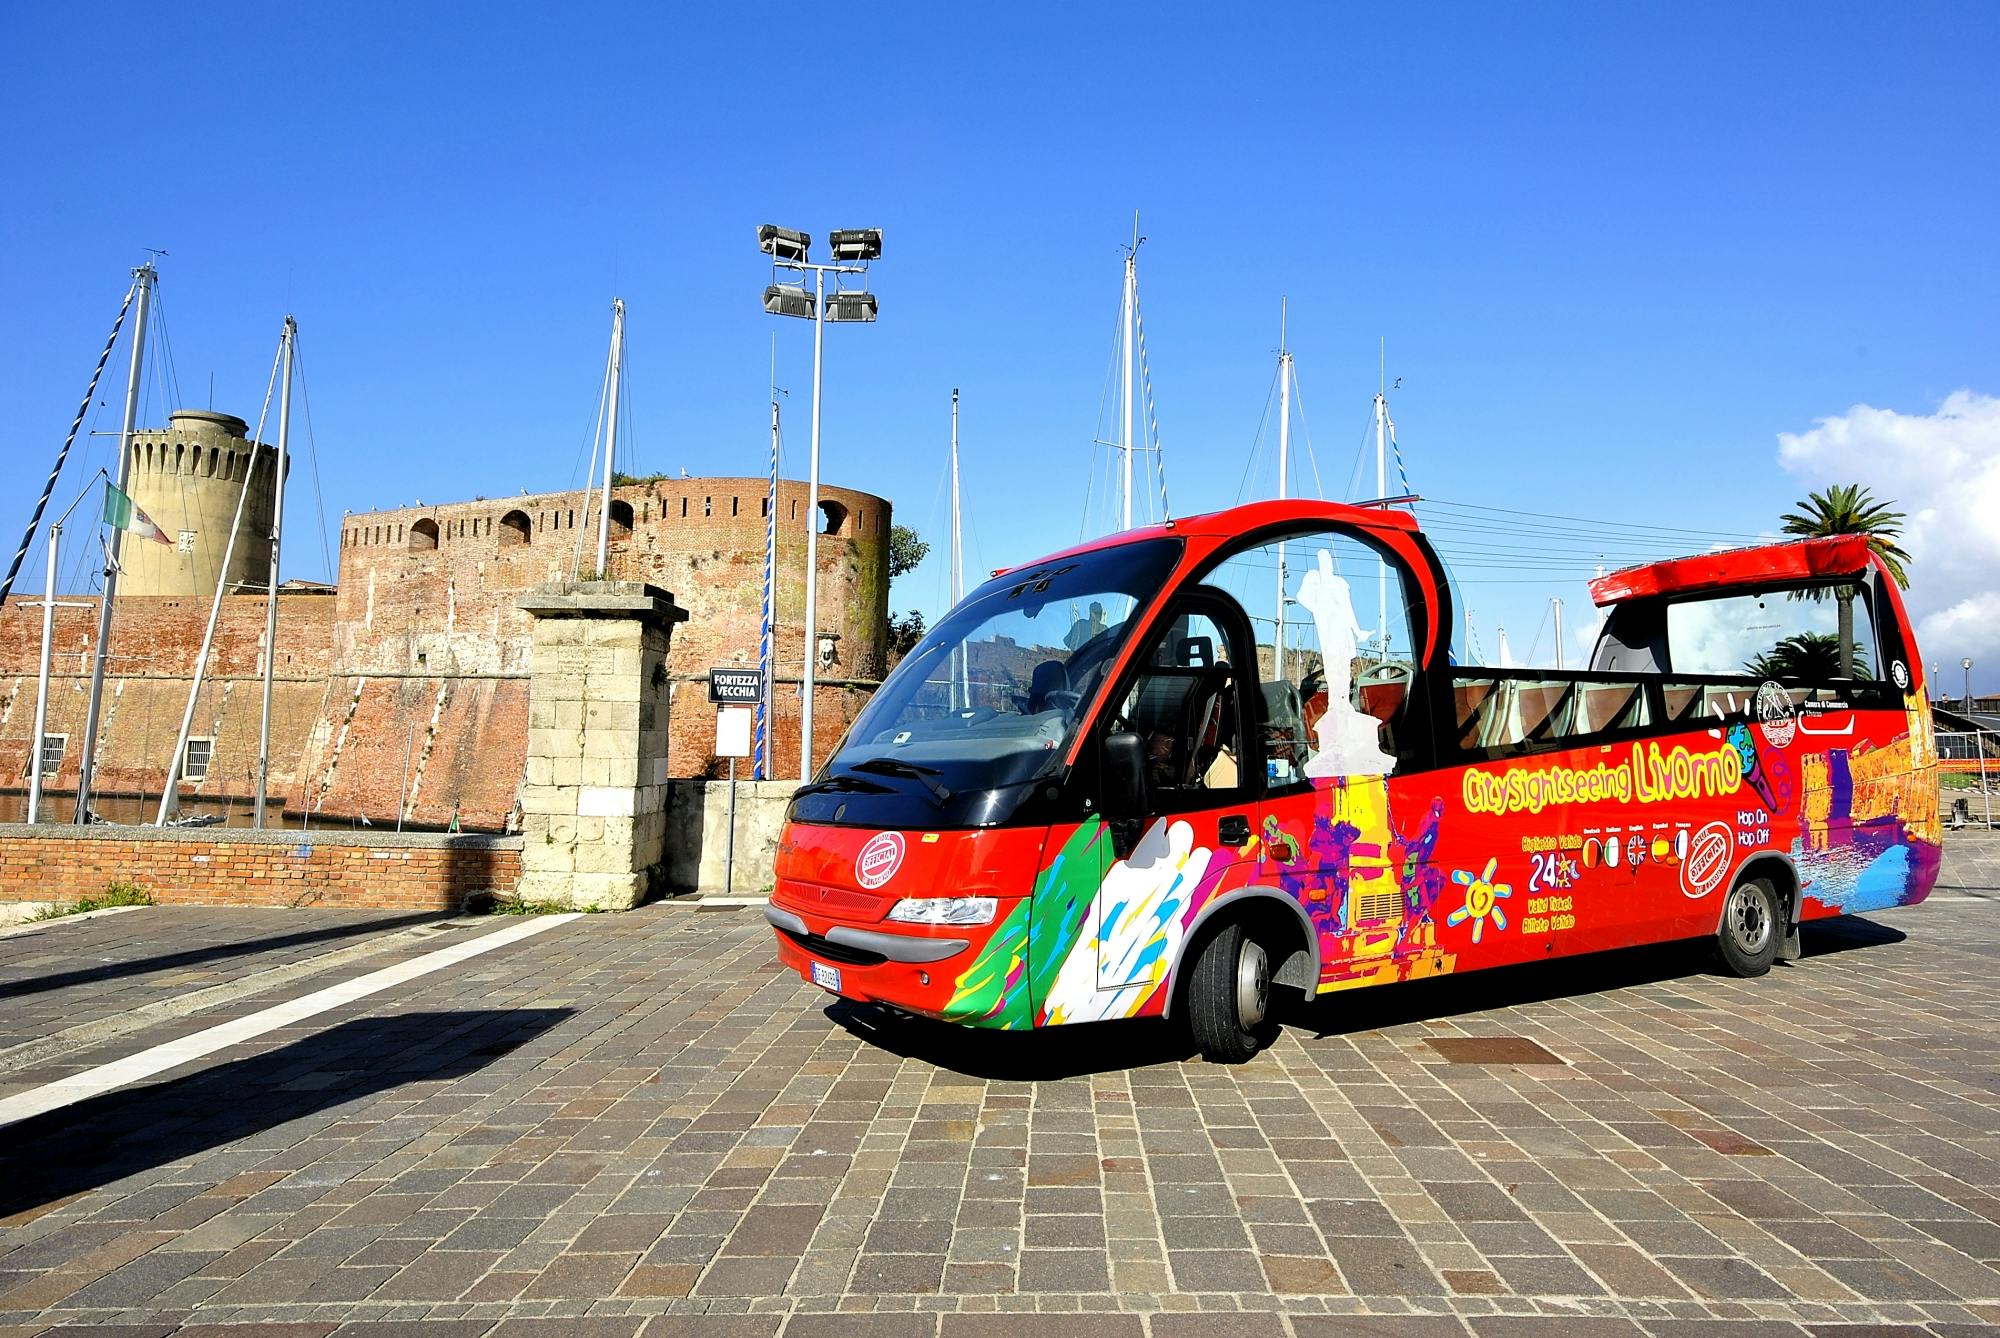 Livorno hop-on hop-off bus 24-hour tickets